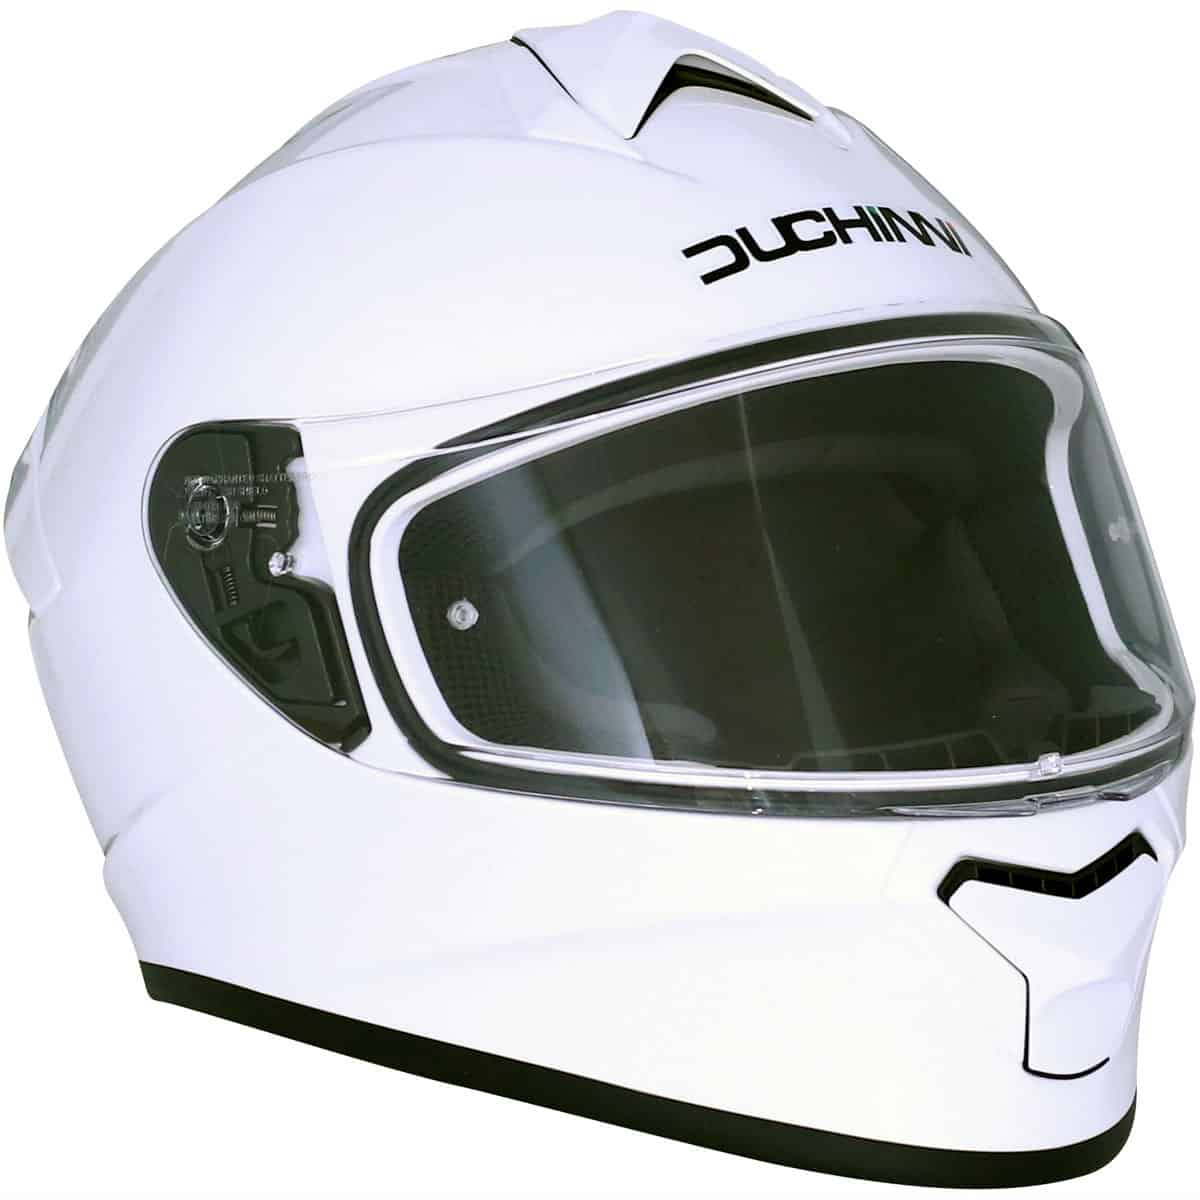 Duchinni D977 Full Face Motorcycle Helmet - White 4